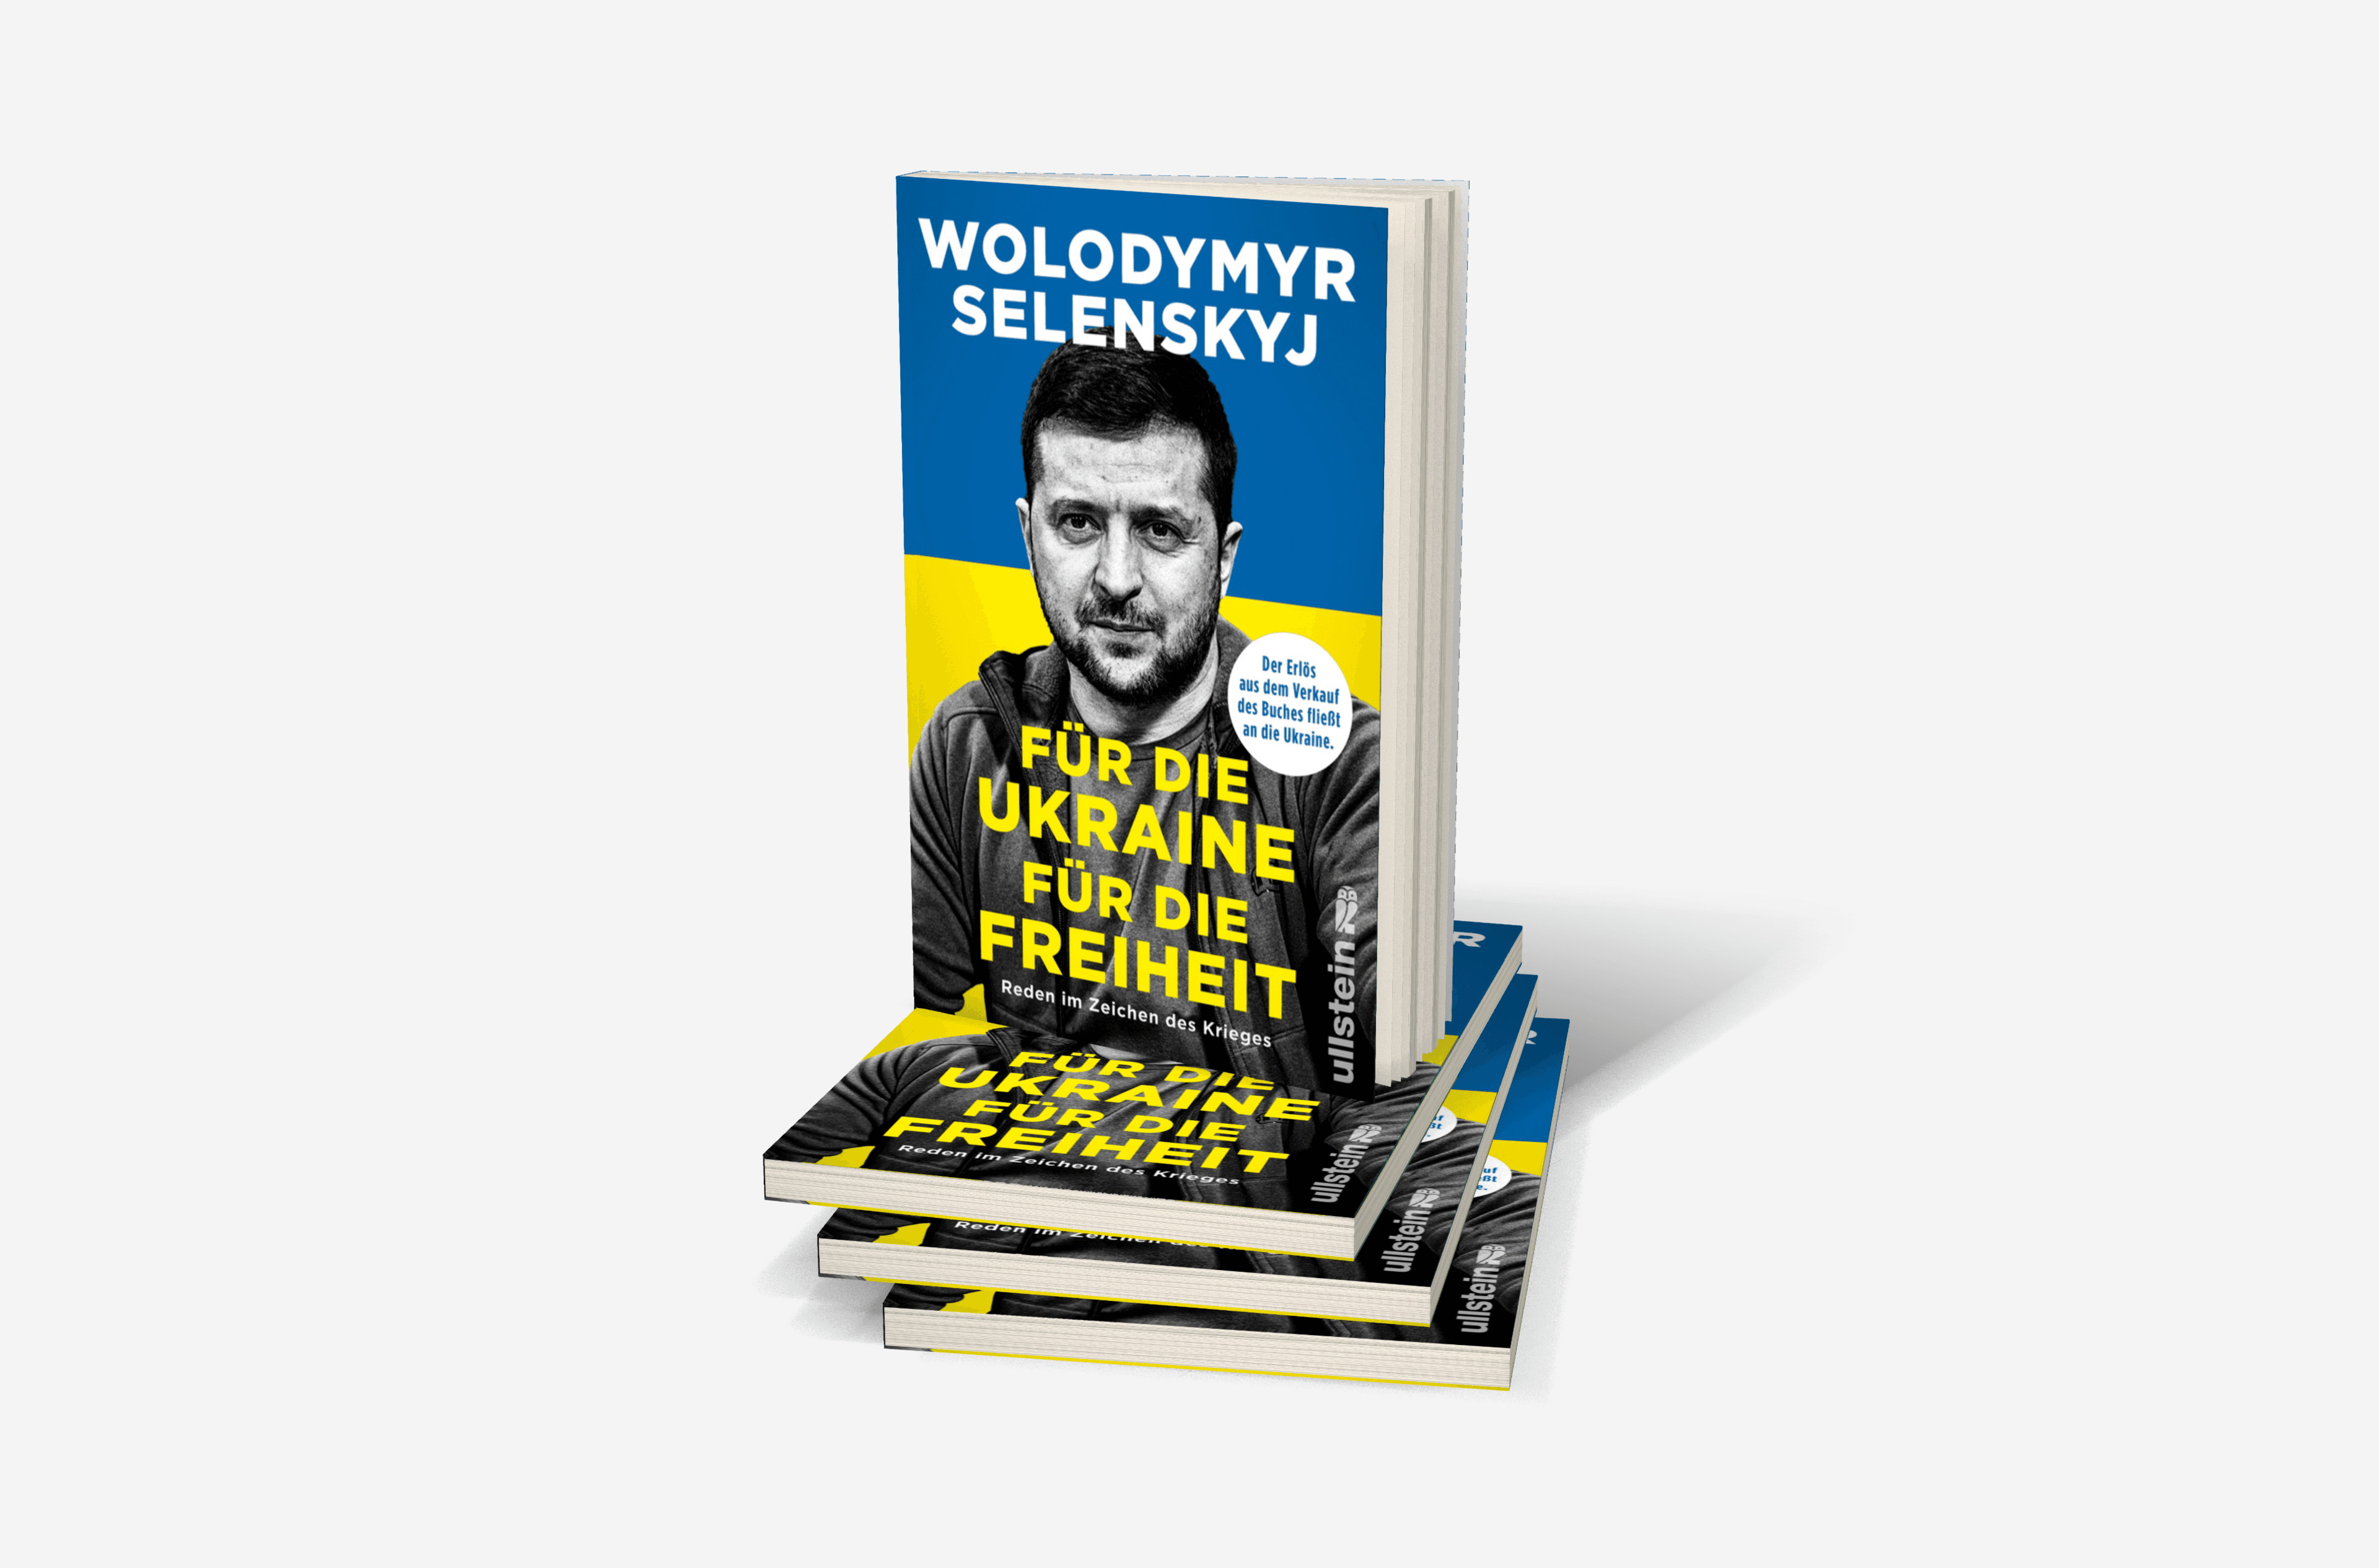 Buchcover von Für die Ukraine - für die Freiheit